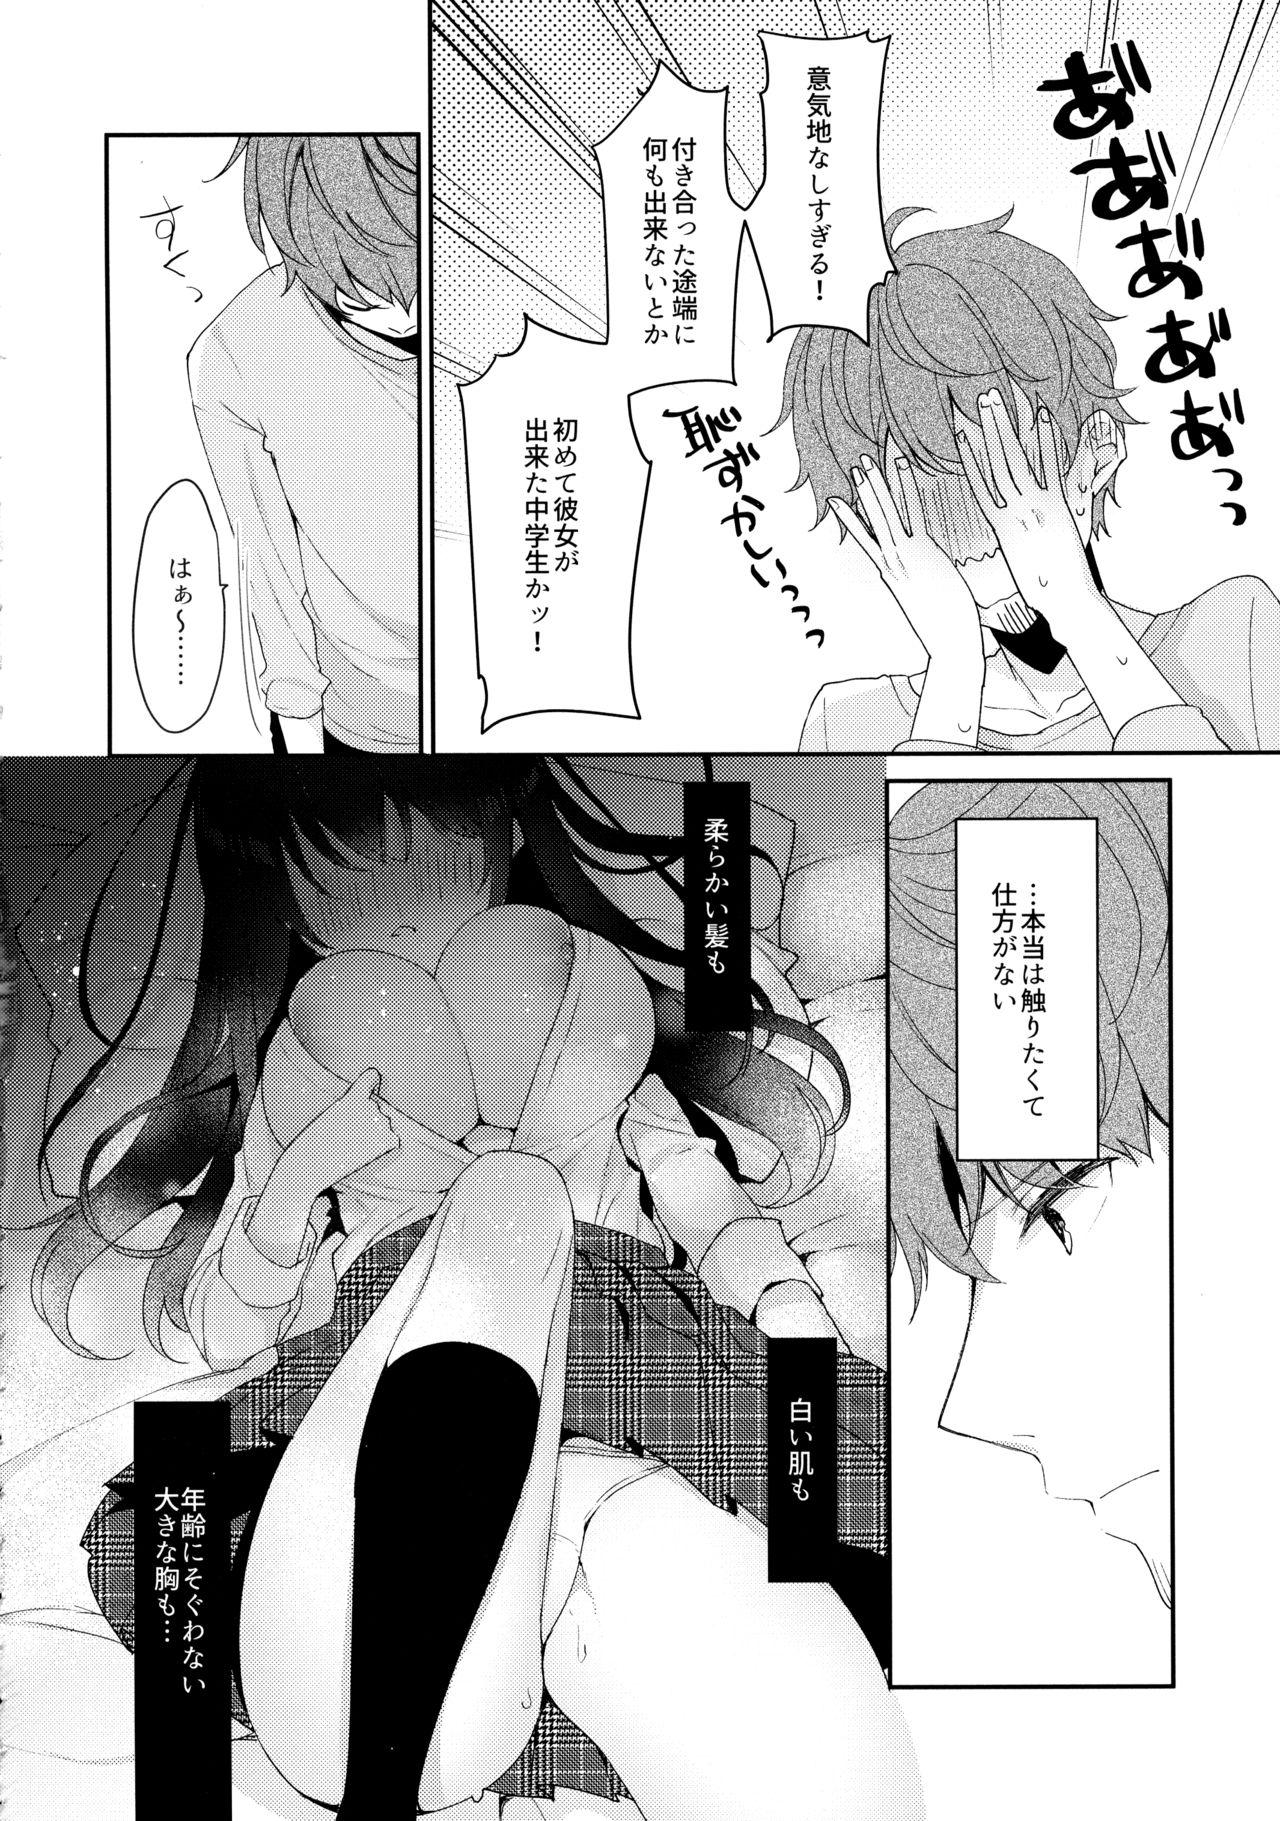 Sex Massage 12-sai Sa no Himitsu Renai 3 - Original Hot Women Having Sex - Page 7